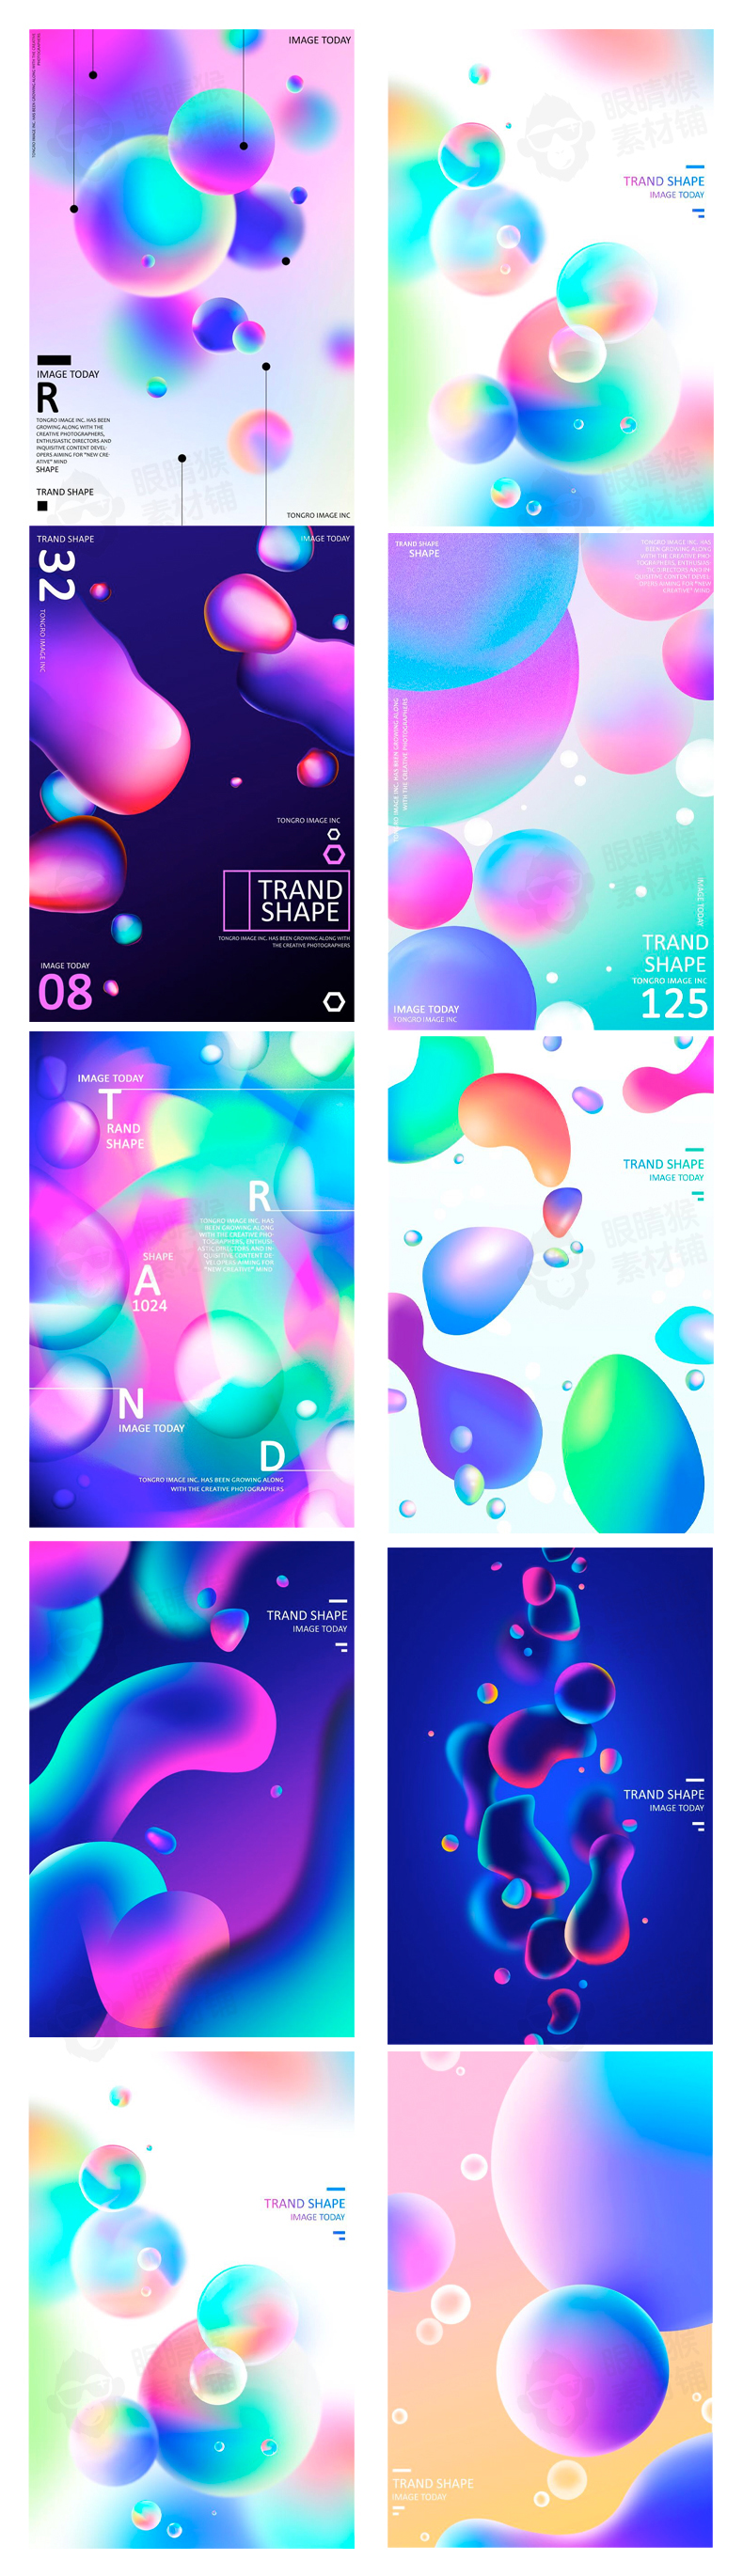 时尚视觉渐变3d流体彩色几何图形抽象艺术海报模板PSD设计素材-背景素材-到位啦UI